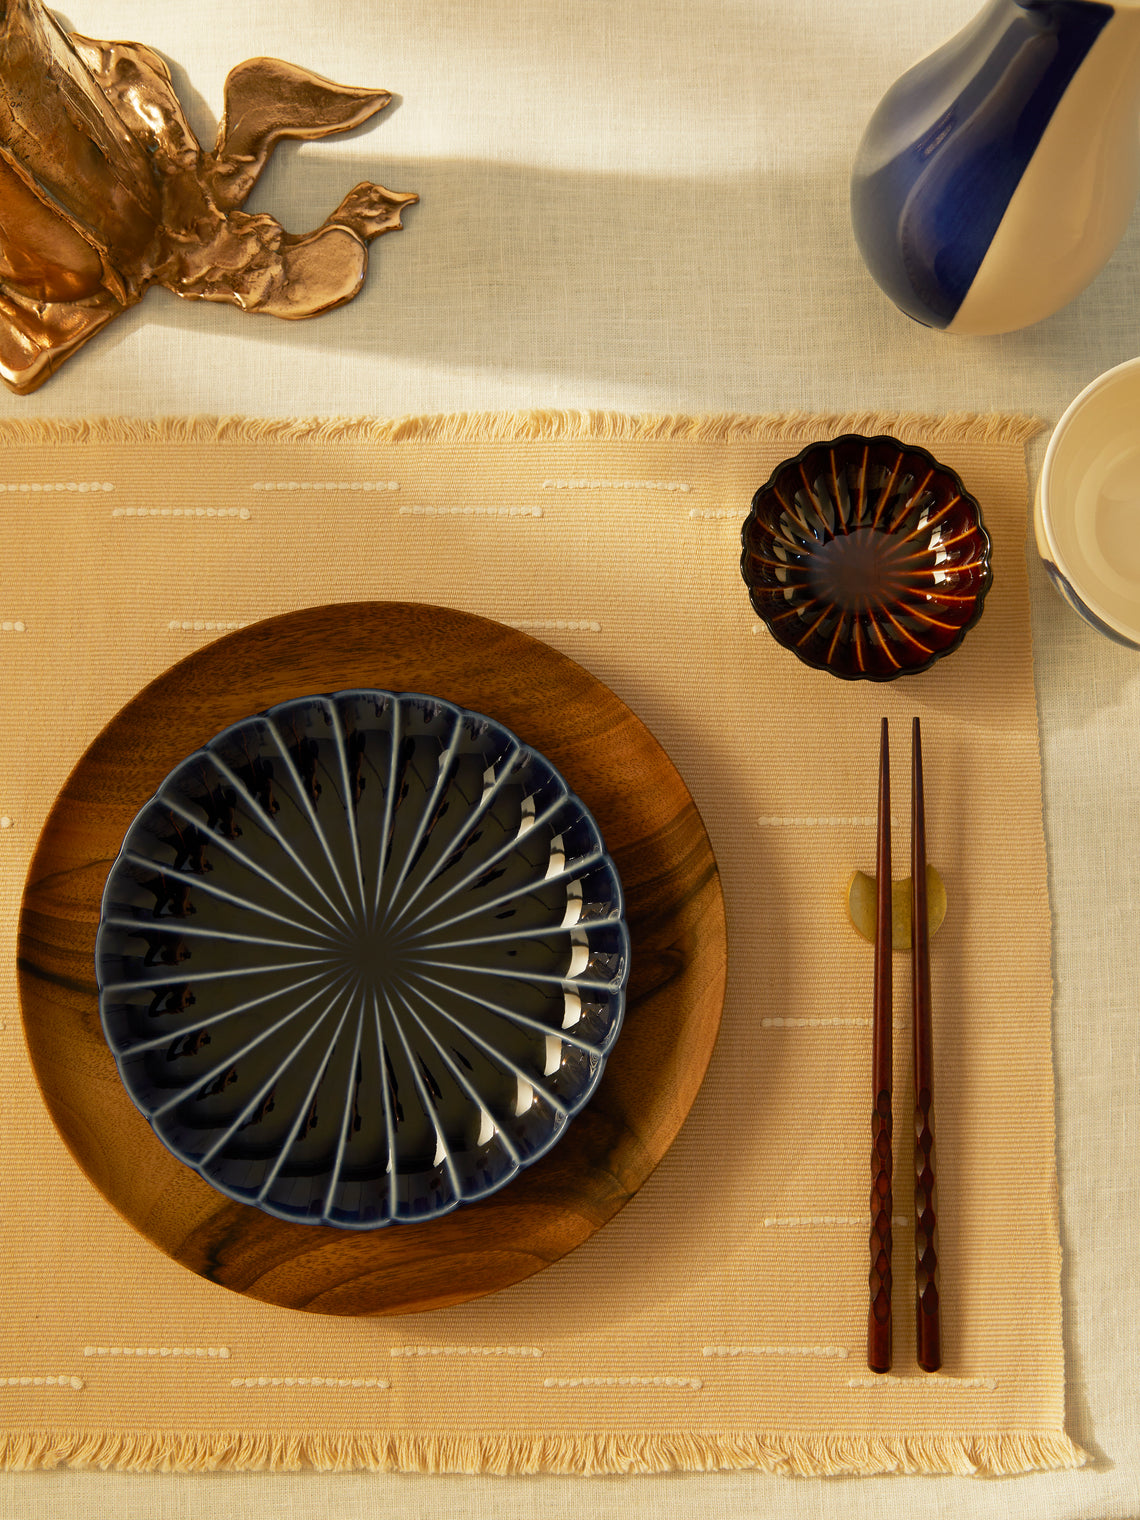 Kaneko Kohyo - Giyaman Urushi Ceramic Dessert Plates (Set of 4) - Blue - ABASK